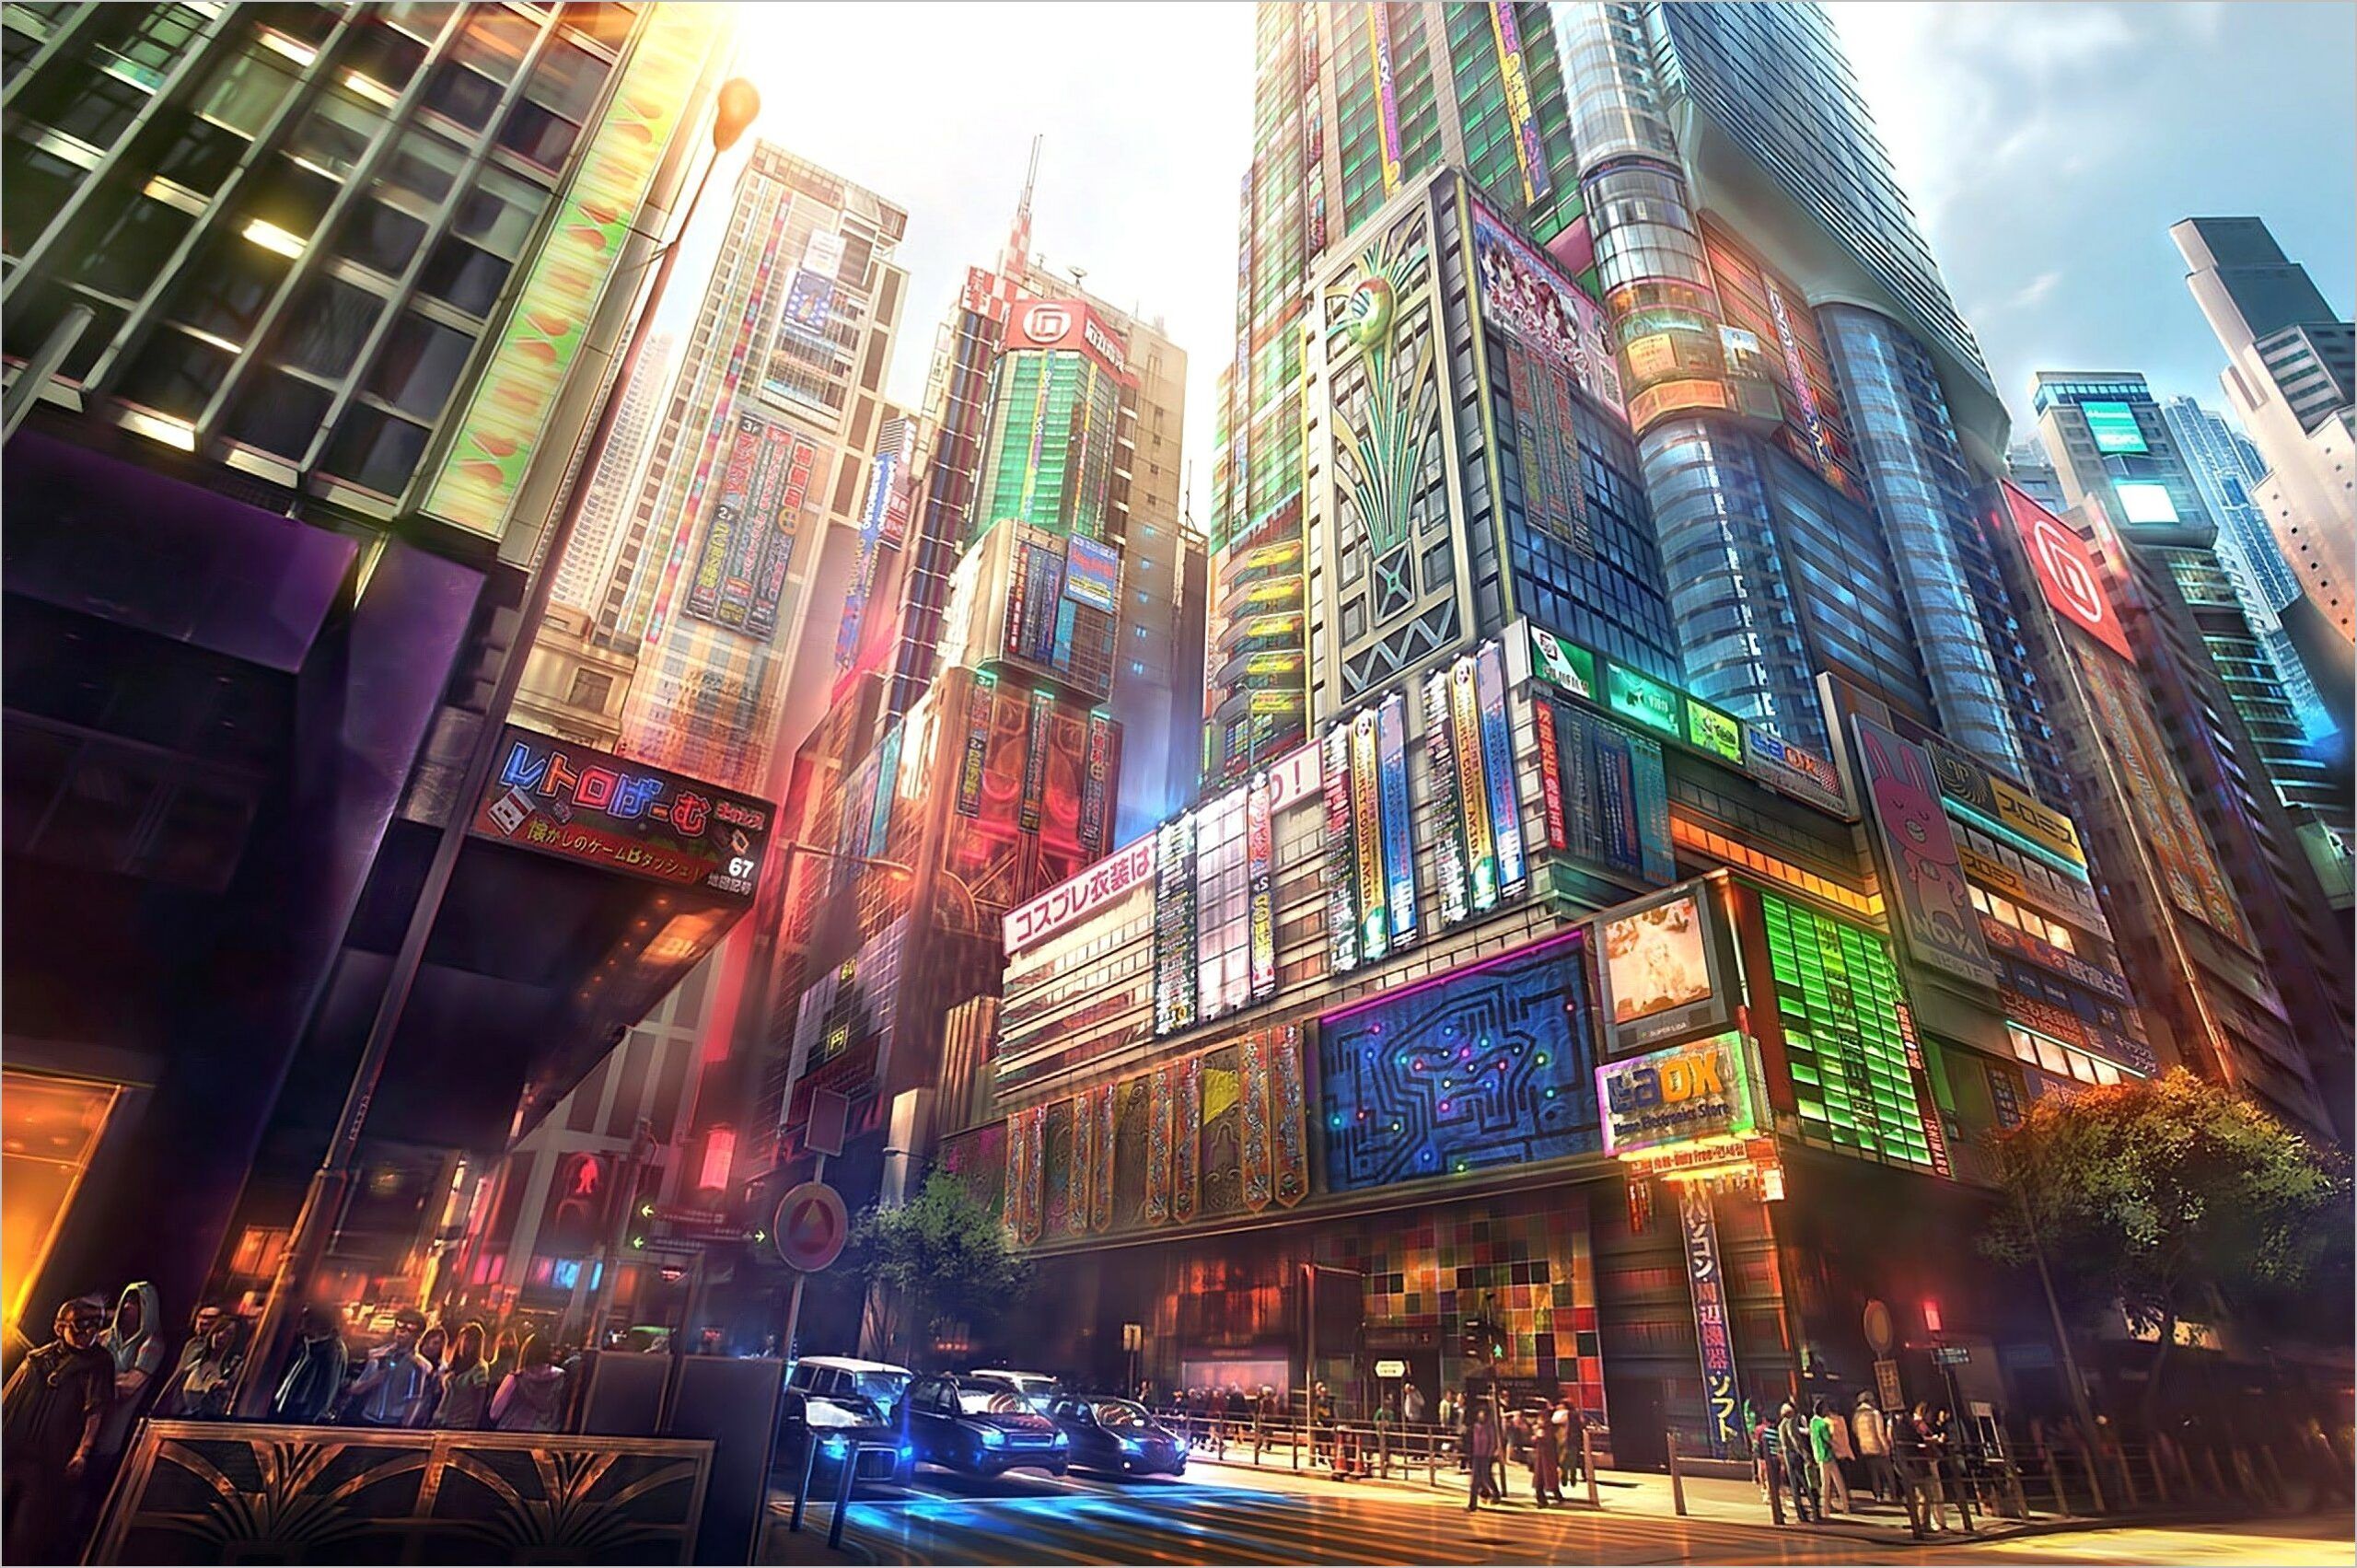 Japan 4k Wallpaper Reddit. Anime city, Anime scenery wallpaper, Digital painting